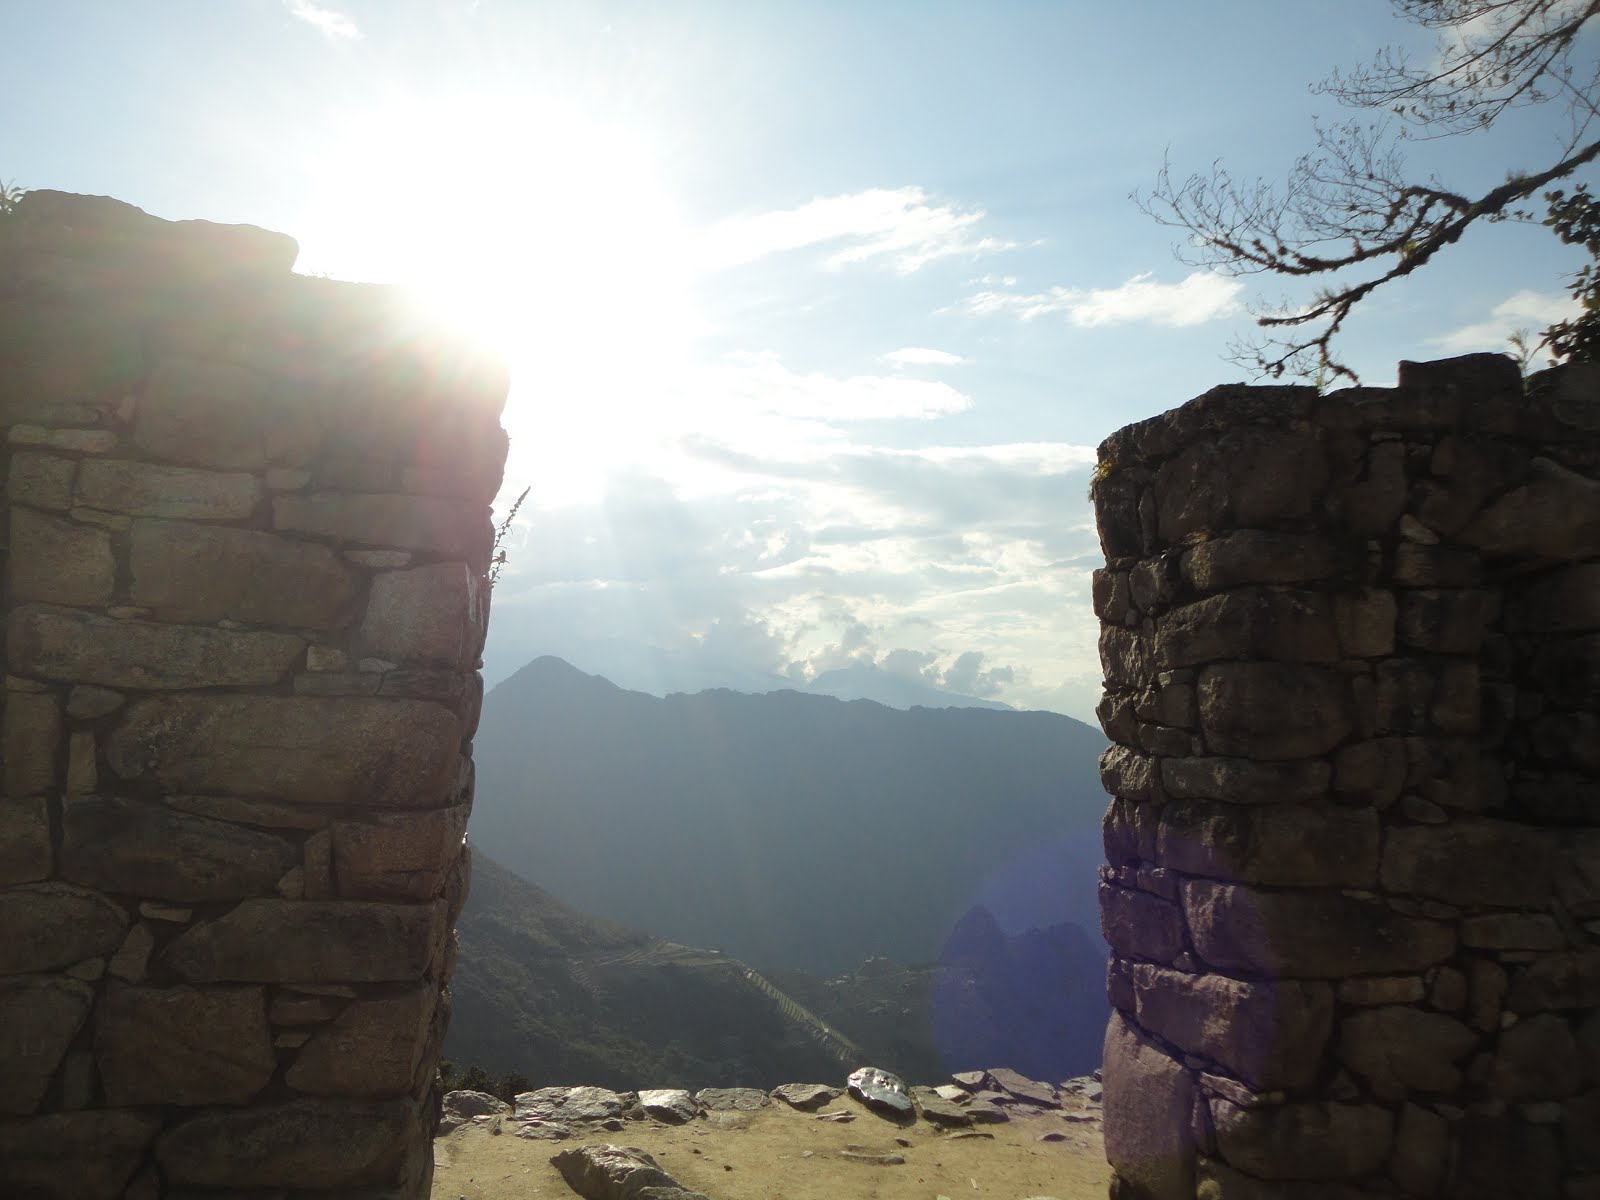 Intipunku - Portal do Sol- Controlava o acesso a cidade Inka